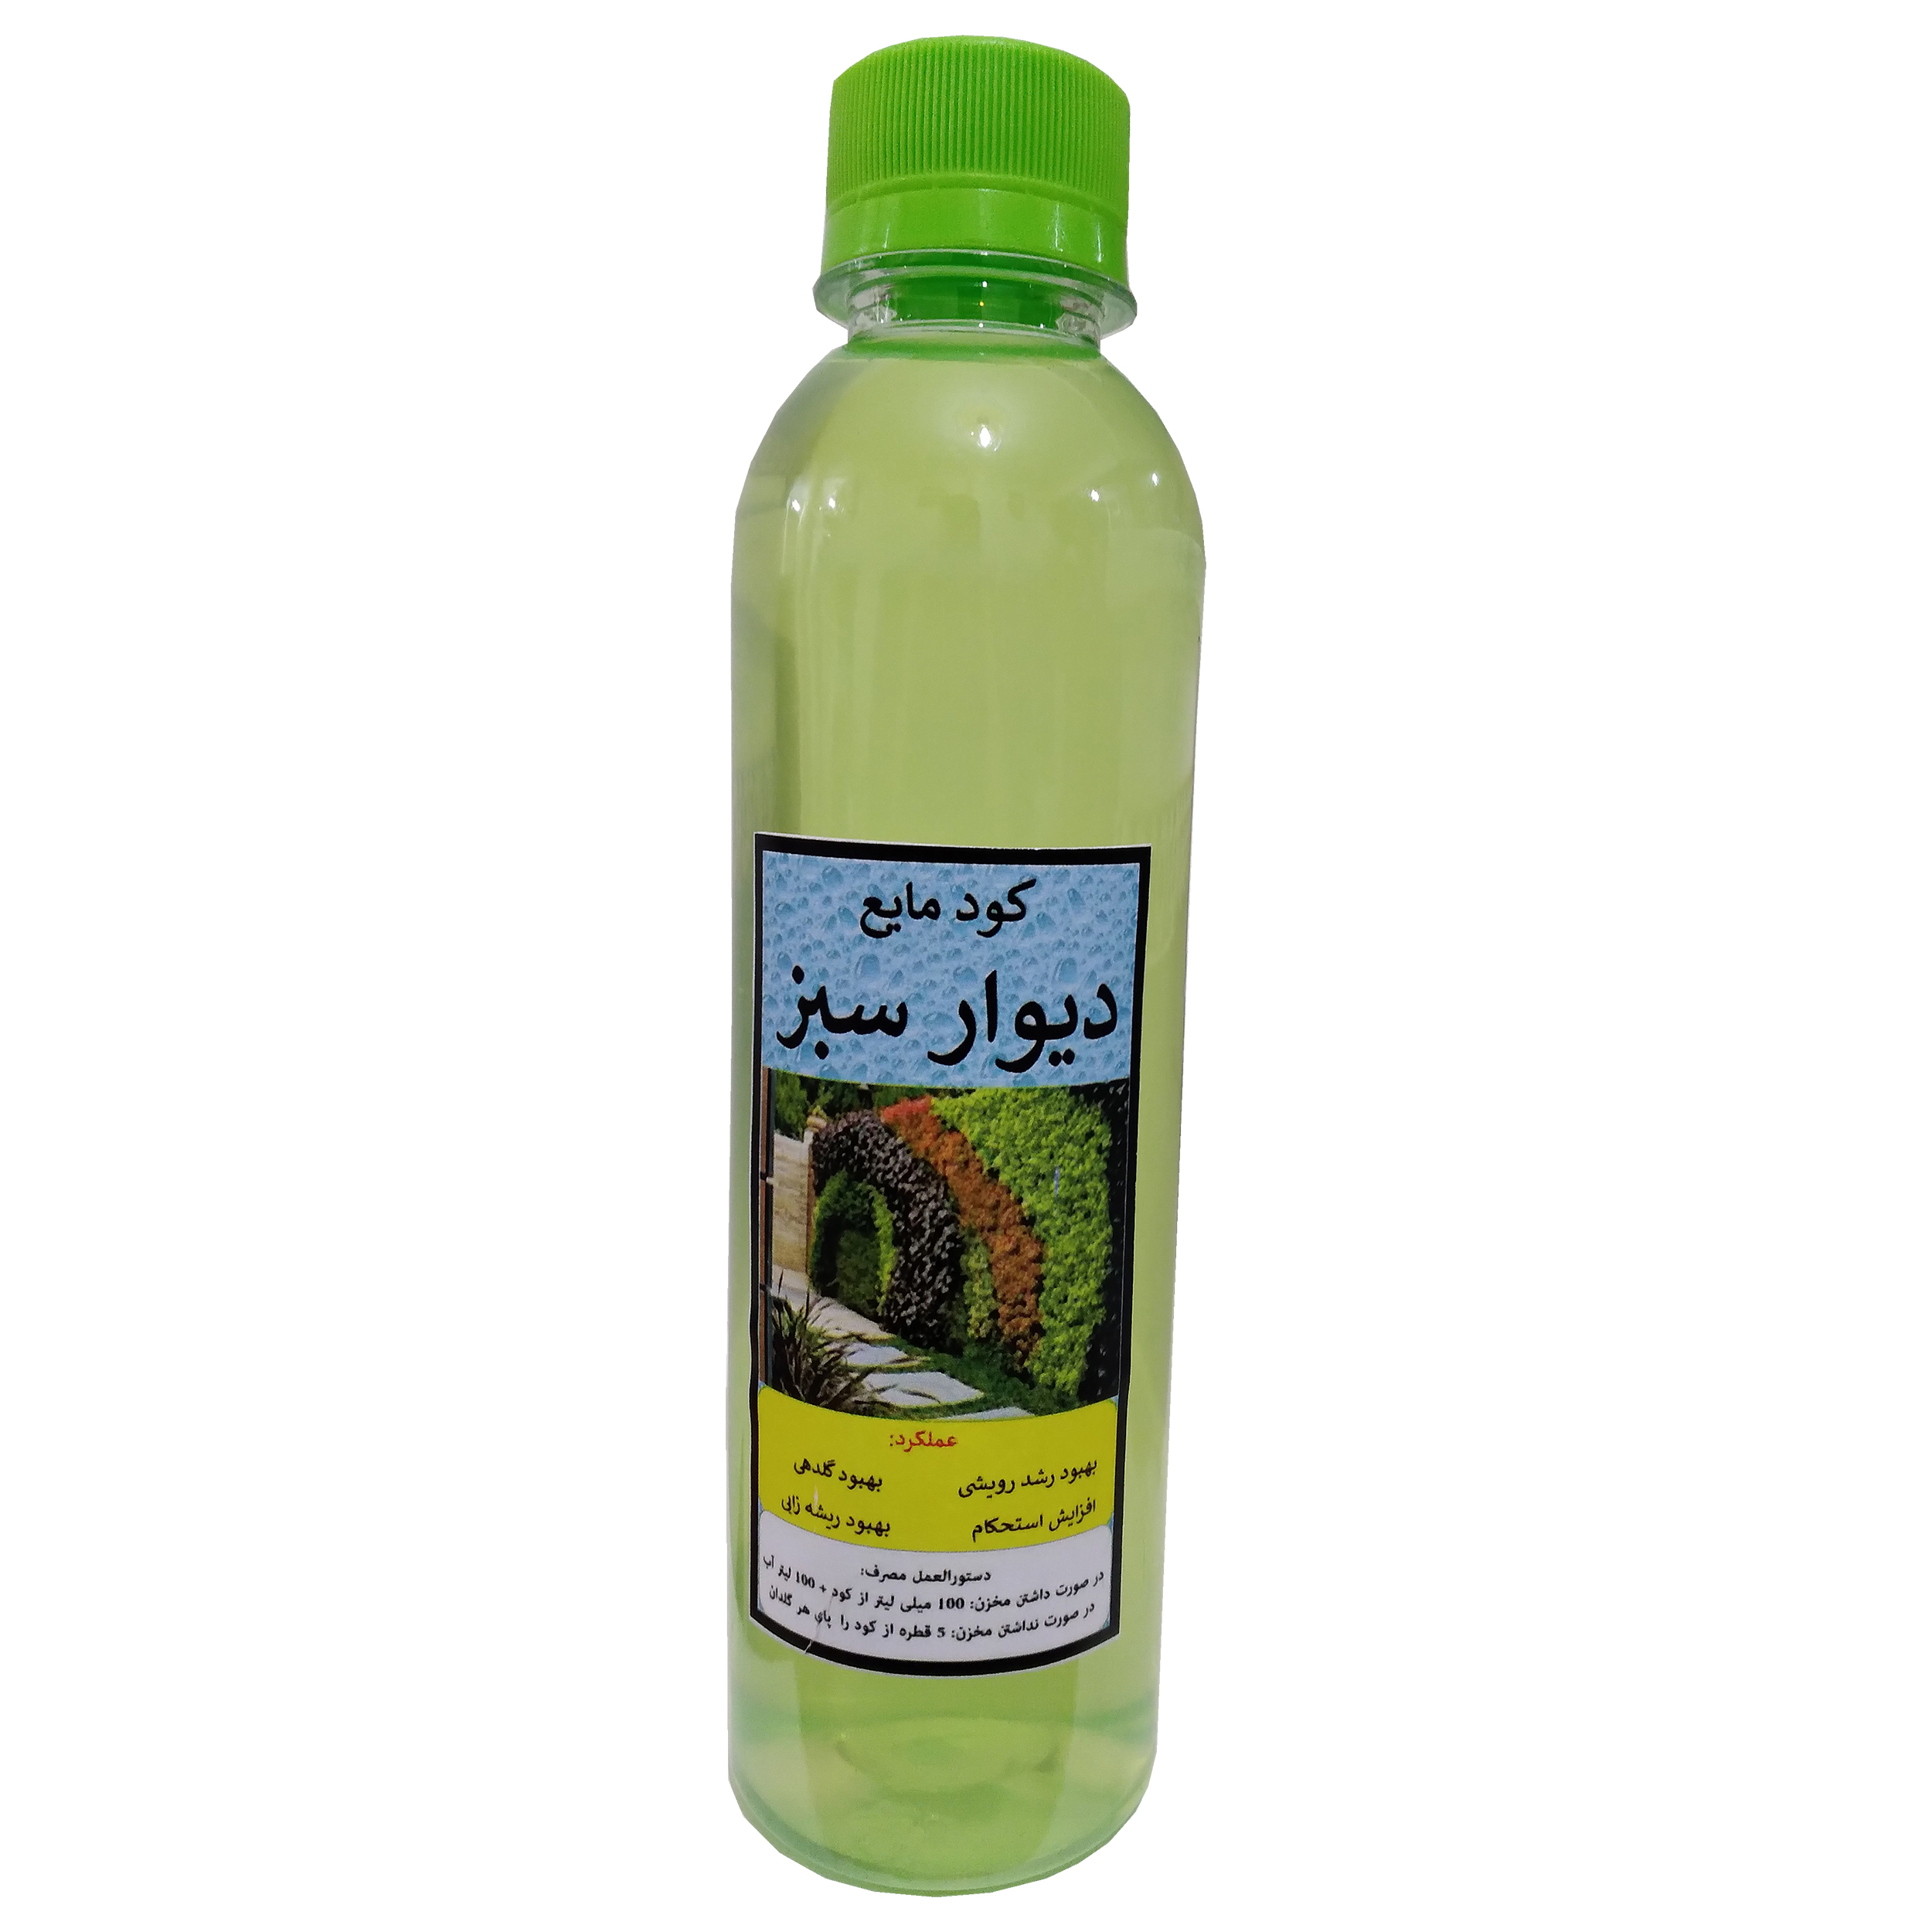 کود مایع مخصوص گیاهان دیوار سبز مدل Abadi005 حجم 250 میلی لیتر